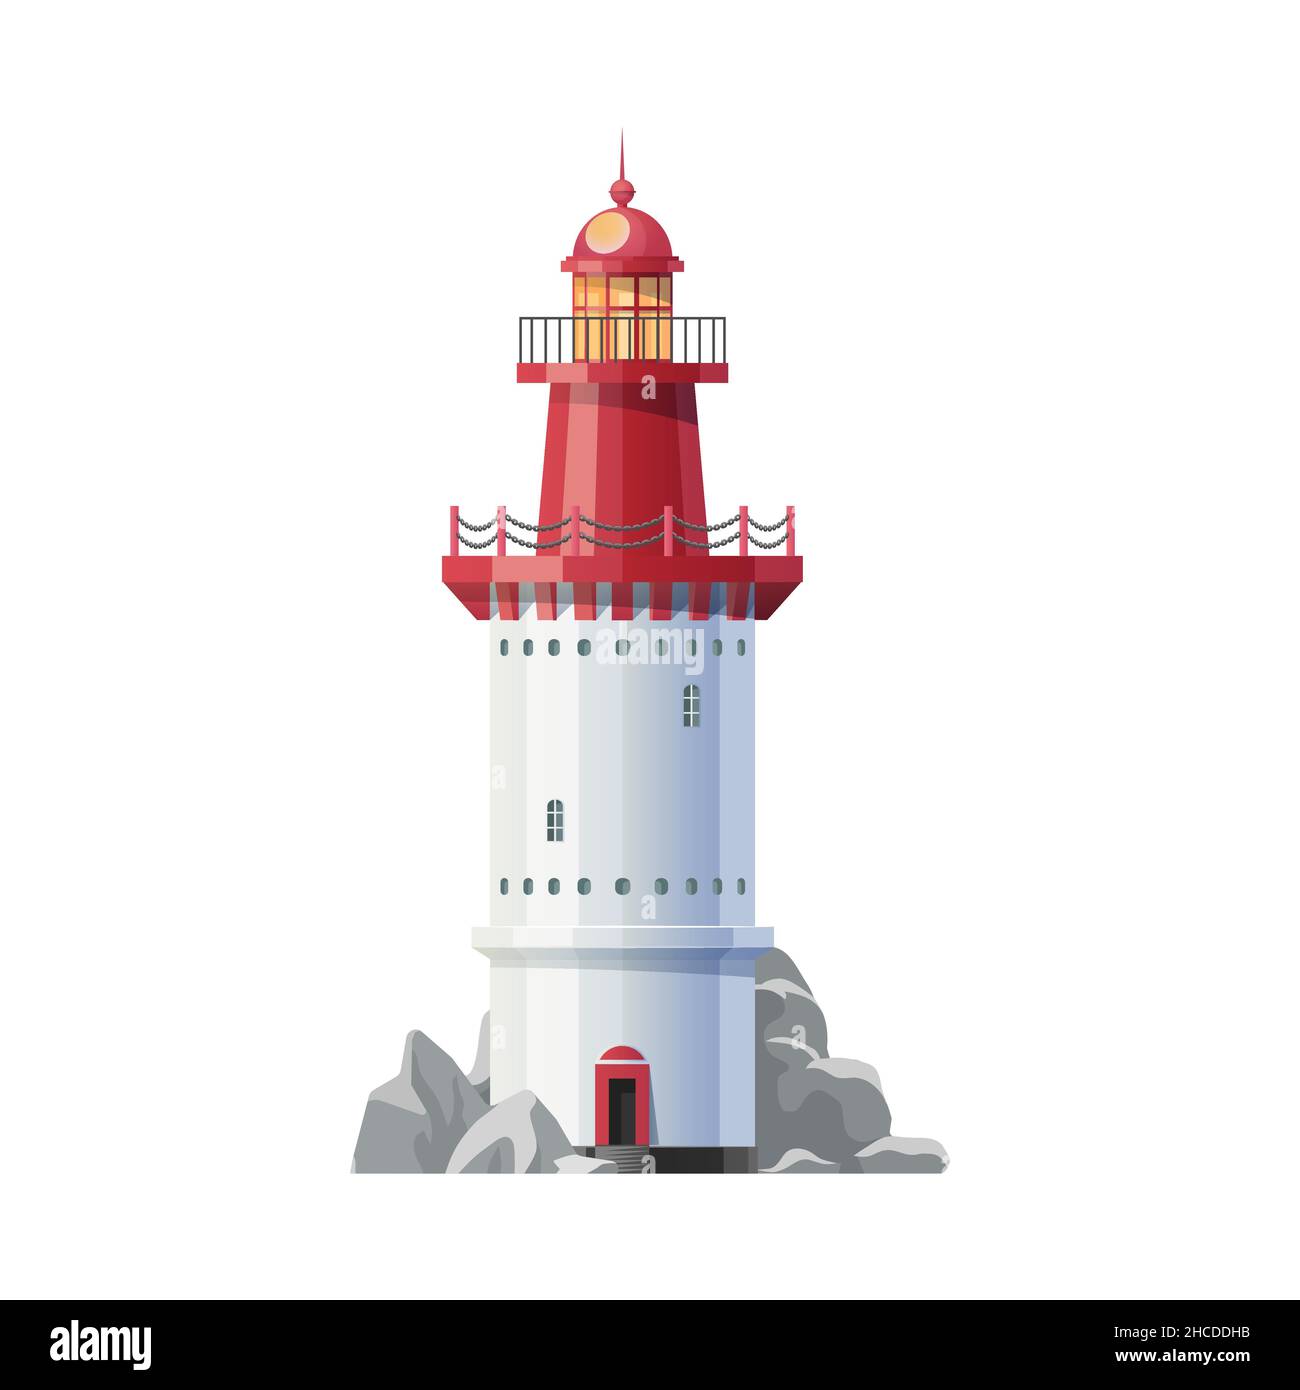 Icono del edificio del faro del mar de época. Torre del faro náutico, linterna del faro de navegación vectorial. Símbolo de viaje marítimo, seguridad de navegación bea Ilustración del Vector